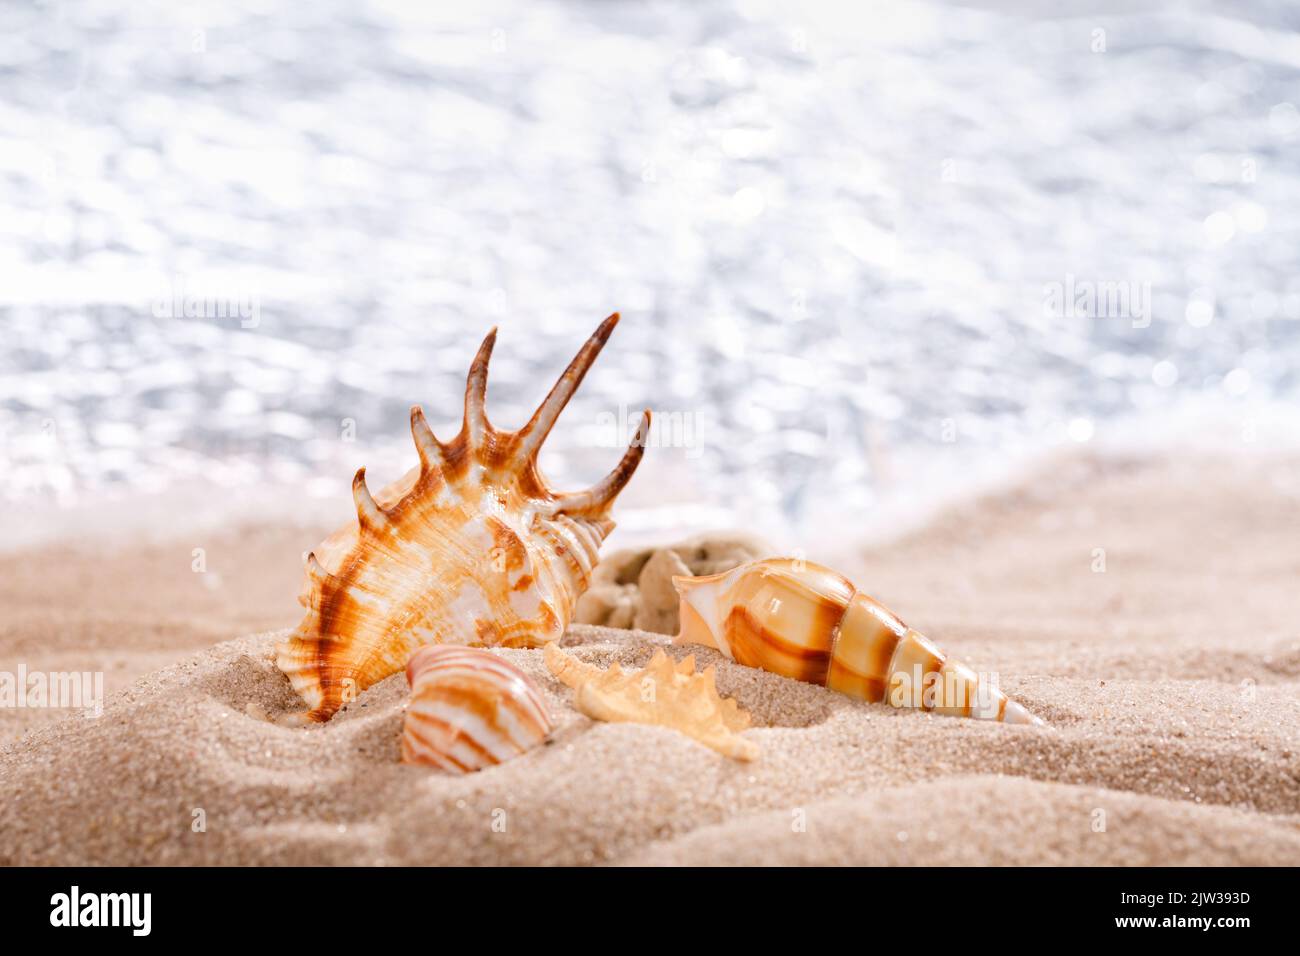 Scorpion ragno conchiglia e altre conchiglie in sabbia su uno sfondo di mare. Conchiglie di molluschi. Vacanza mare a tema. Primo piano. Foto Stock